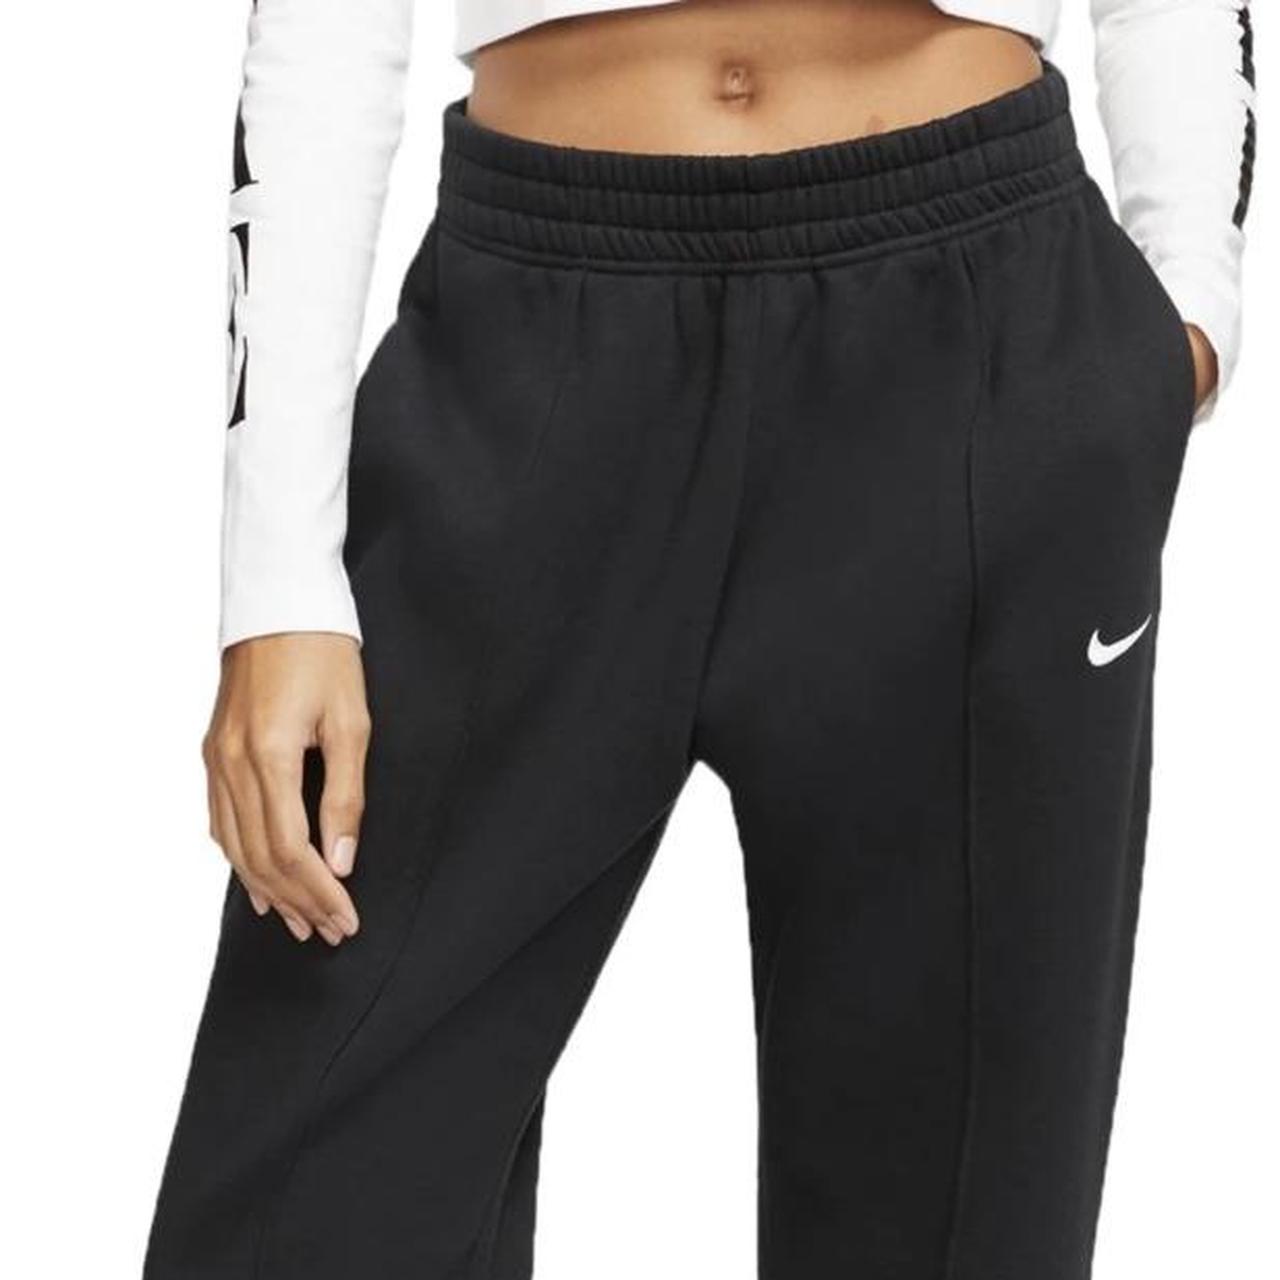 Nike Trend Fleece loose fit cuffed sweatpants in black - BLACK